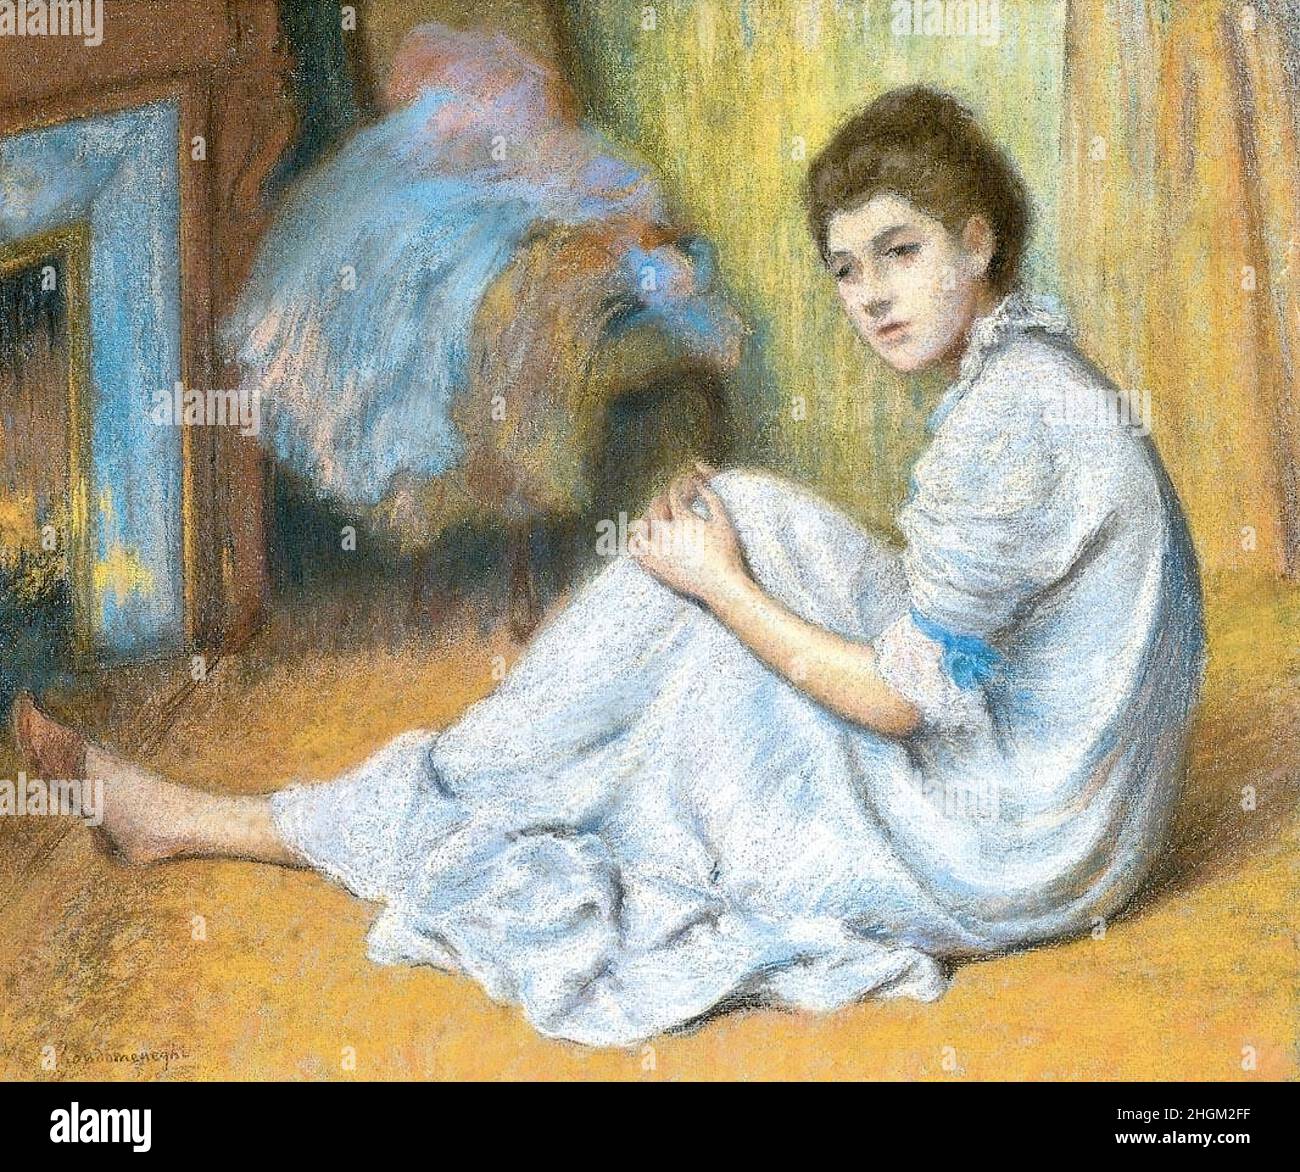 Zandomeneghi Federico - Privatsammlung - Davanti al fuoco - 1896c. - Pastell auf Kartonfarbe 46,5 x 56 cm Stockfoto